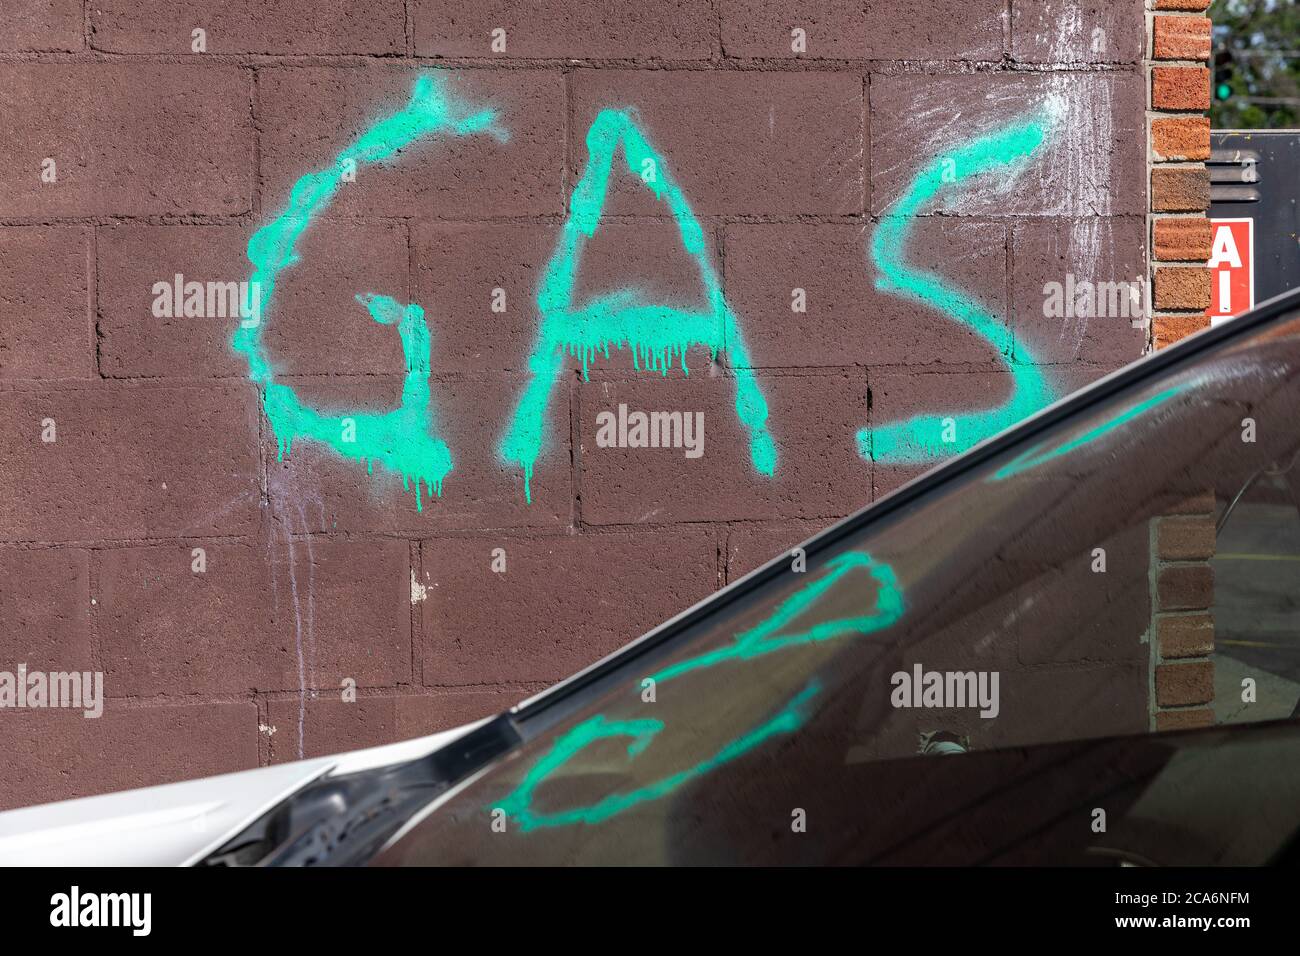 Signe brut dans la peinture verte en spray annonçant l'essence, alias « gaz ». Banque D'Images